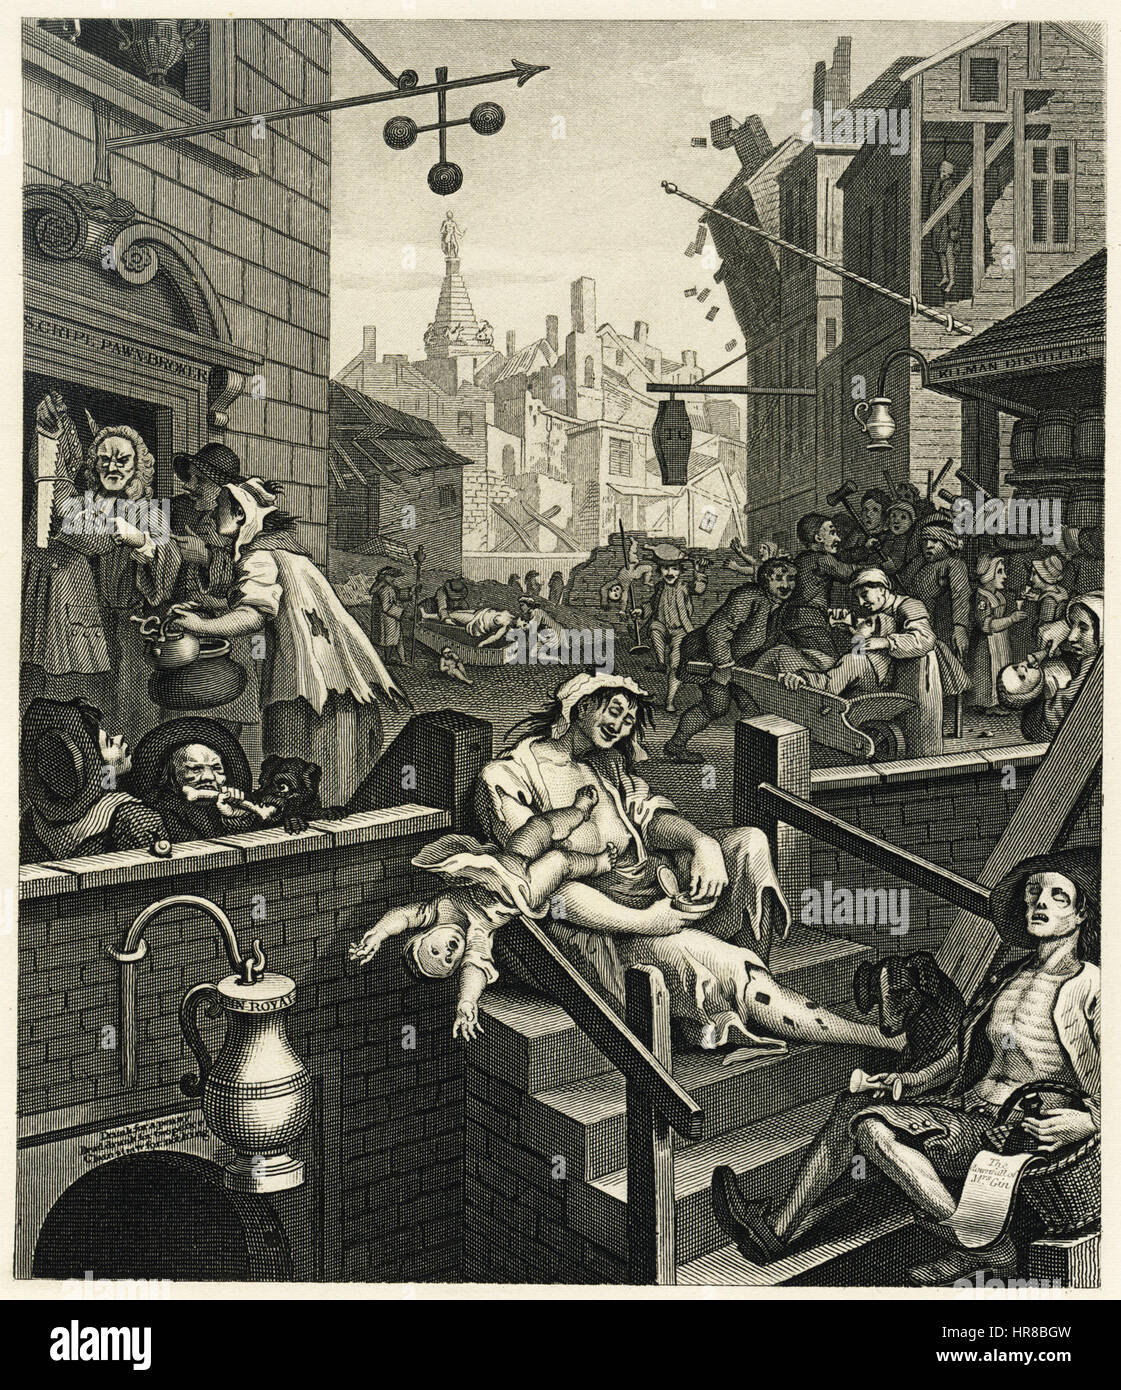 William Hogarth - Gin Lane Stock Photo